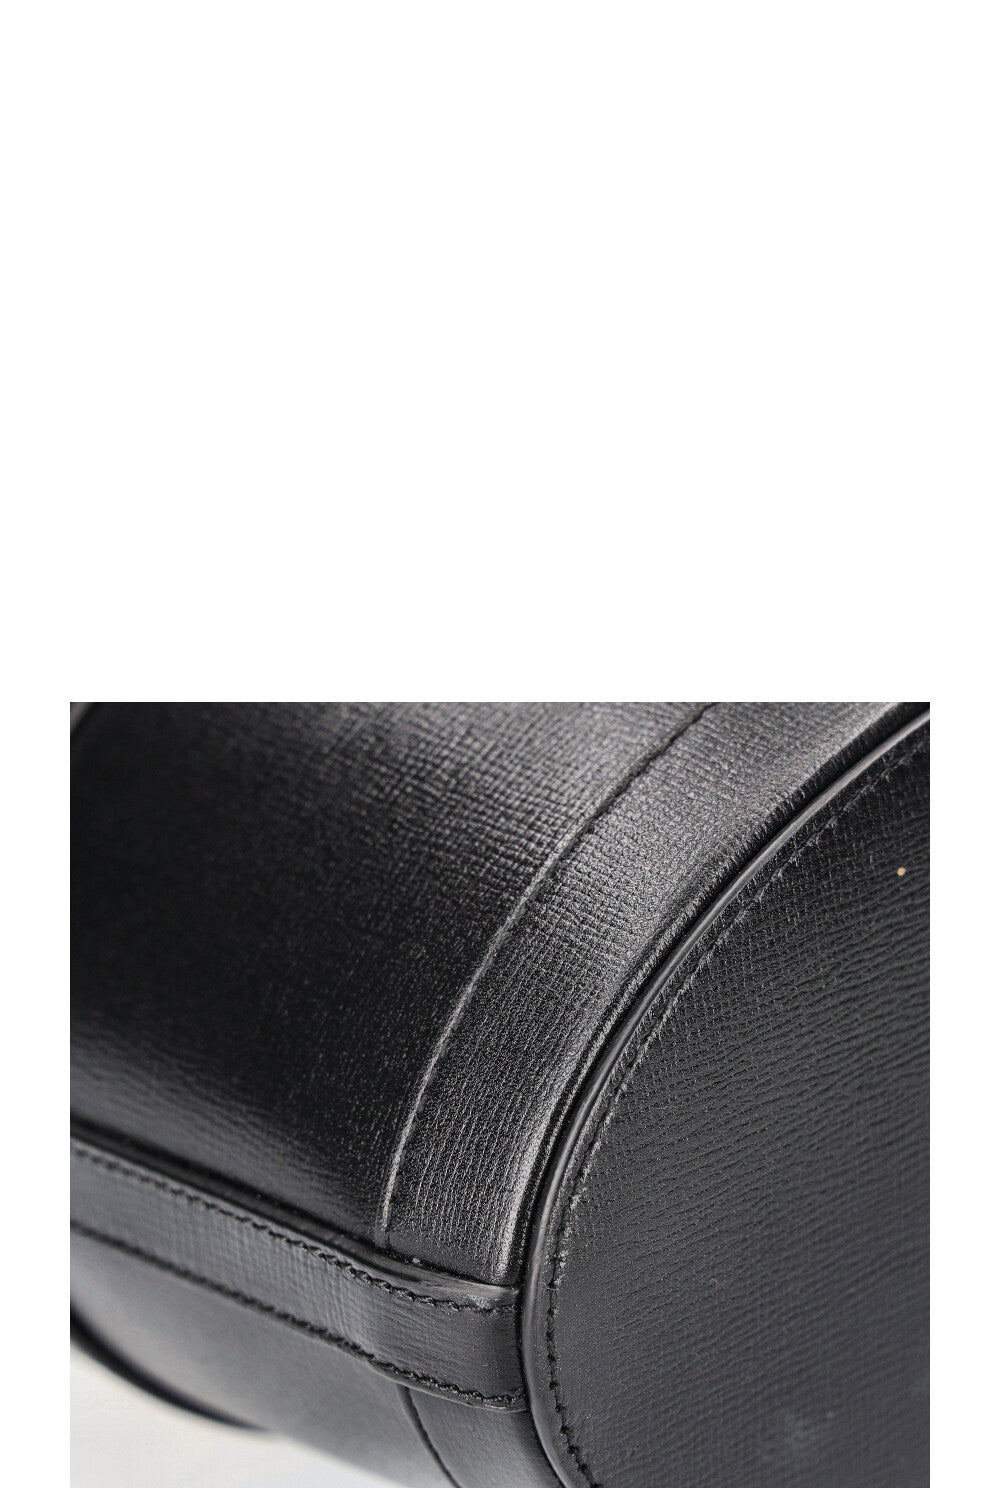 GUCCI Horsebit 1955 Bucket Bag Black Beige